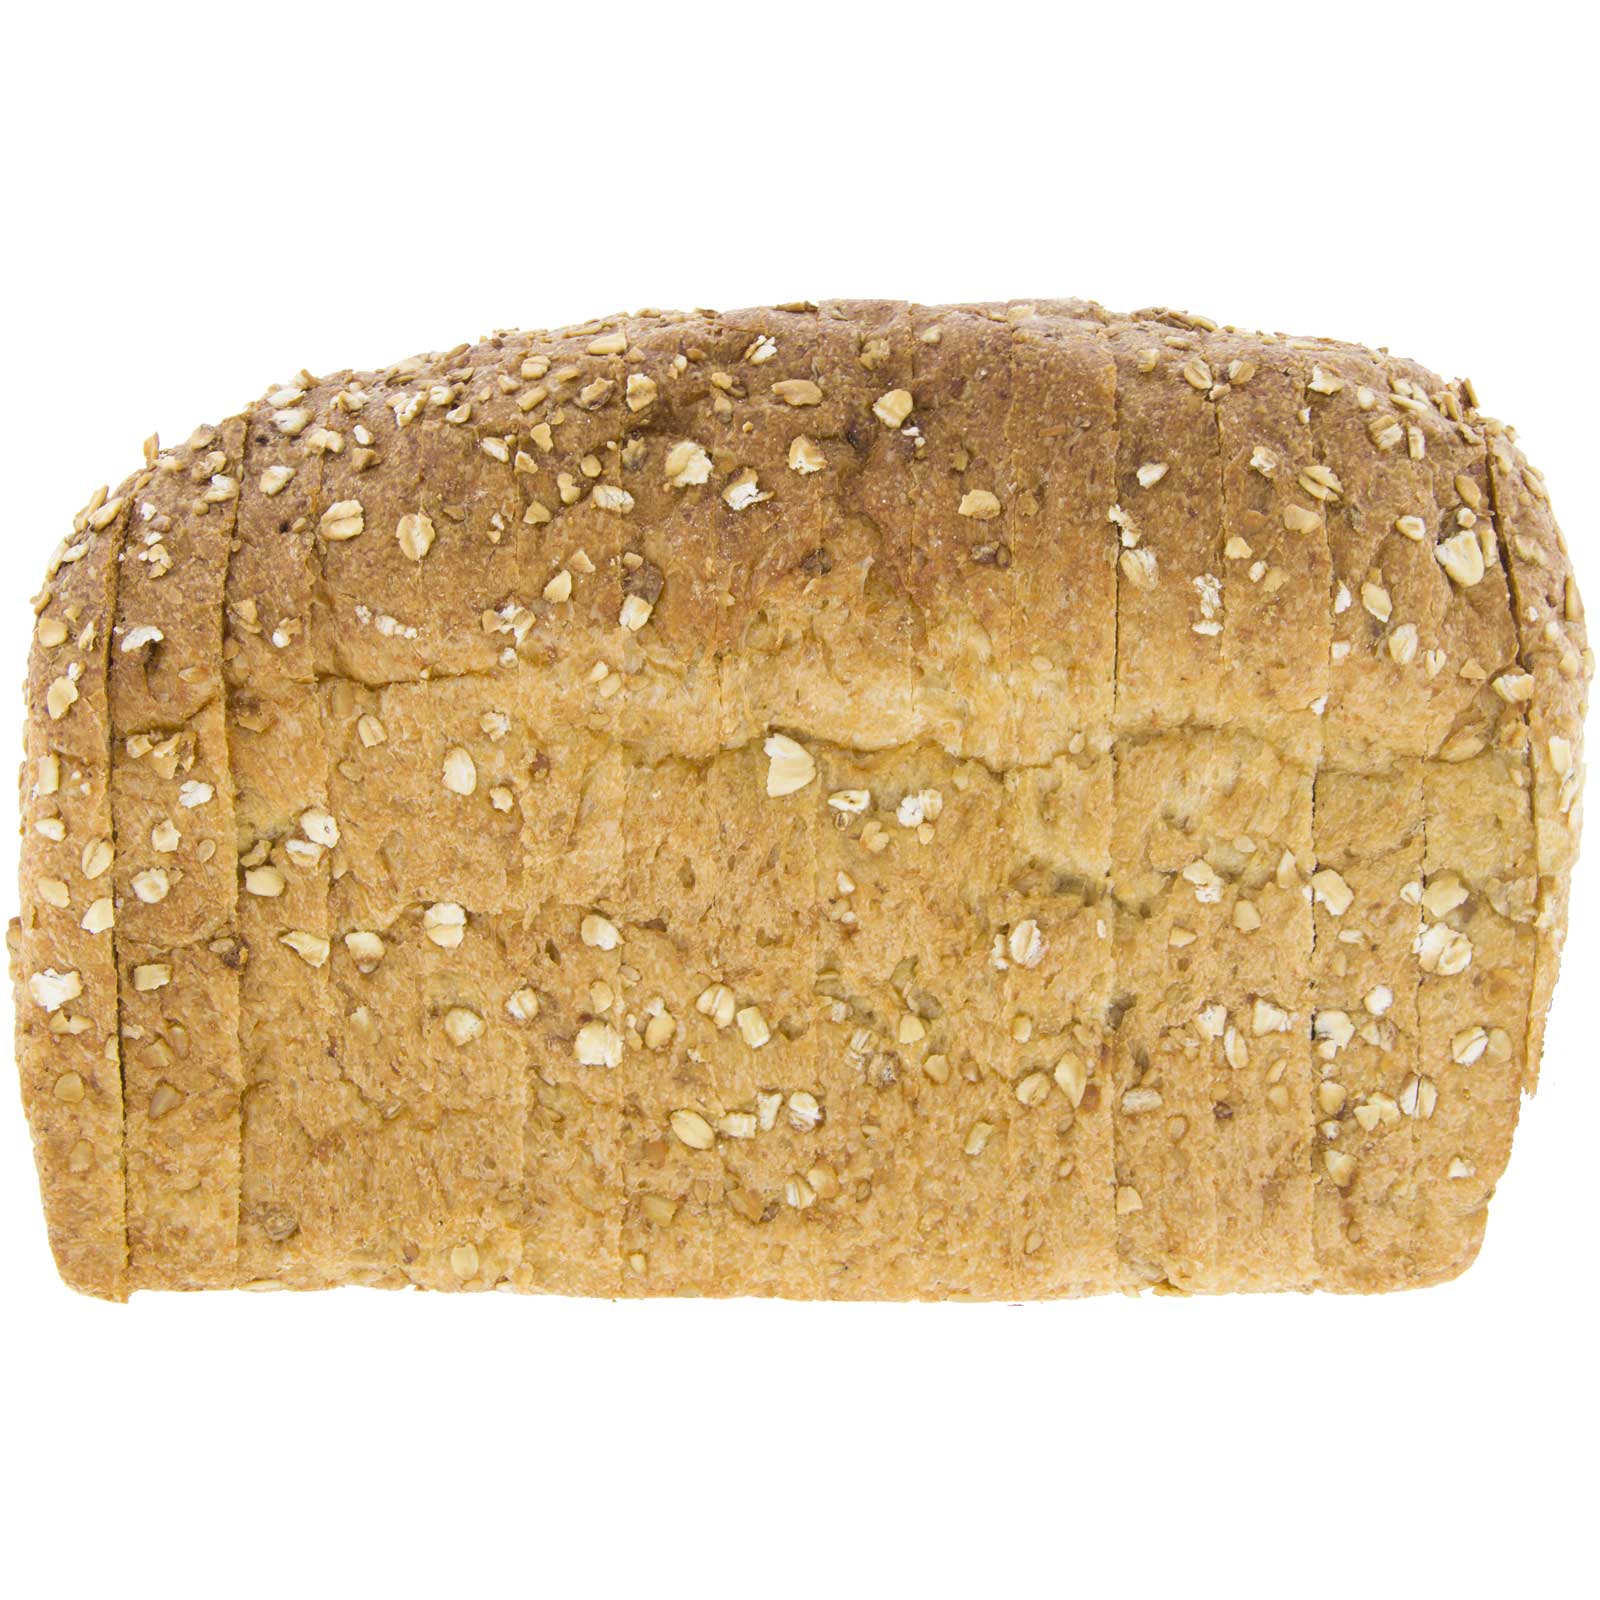 Khorasan Kamut wheat bread mould ®  Organic whole wheat 450g